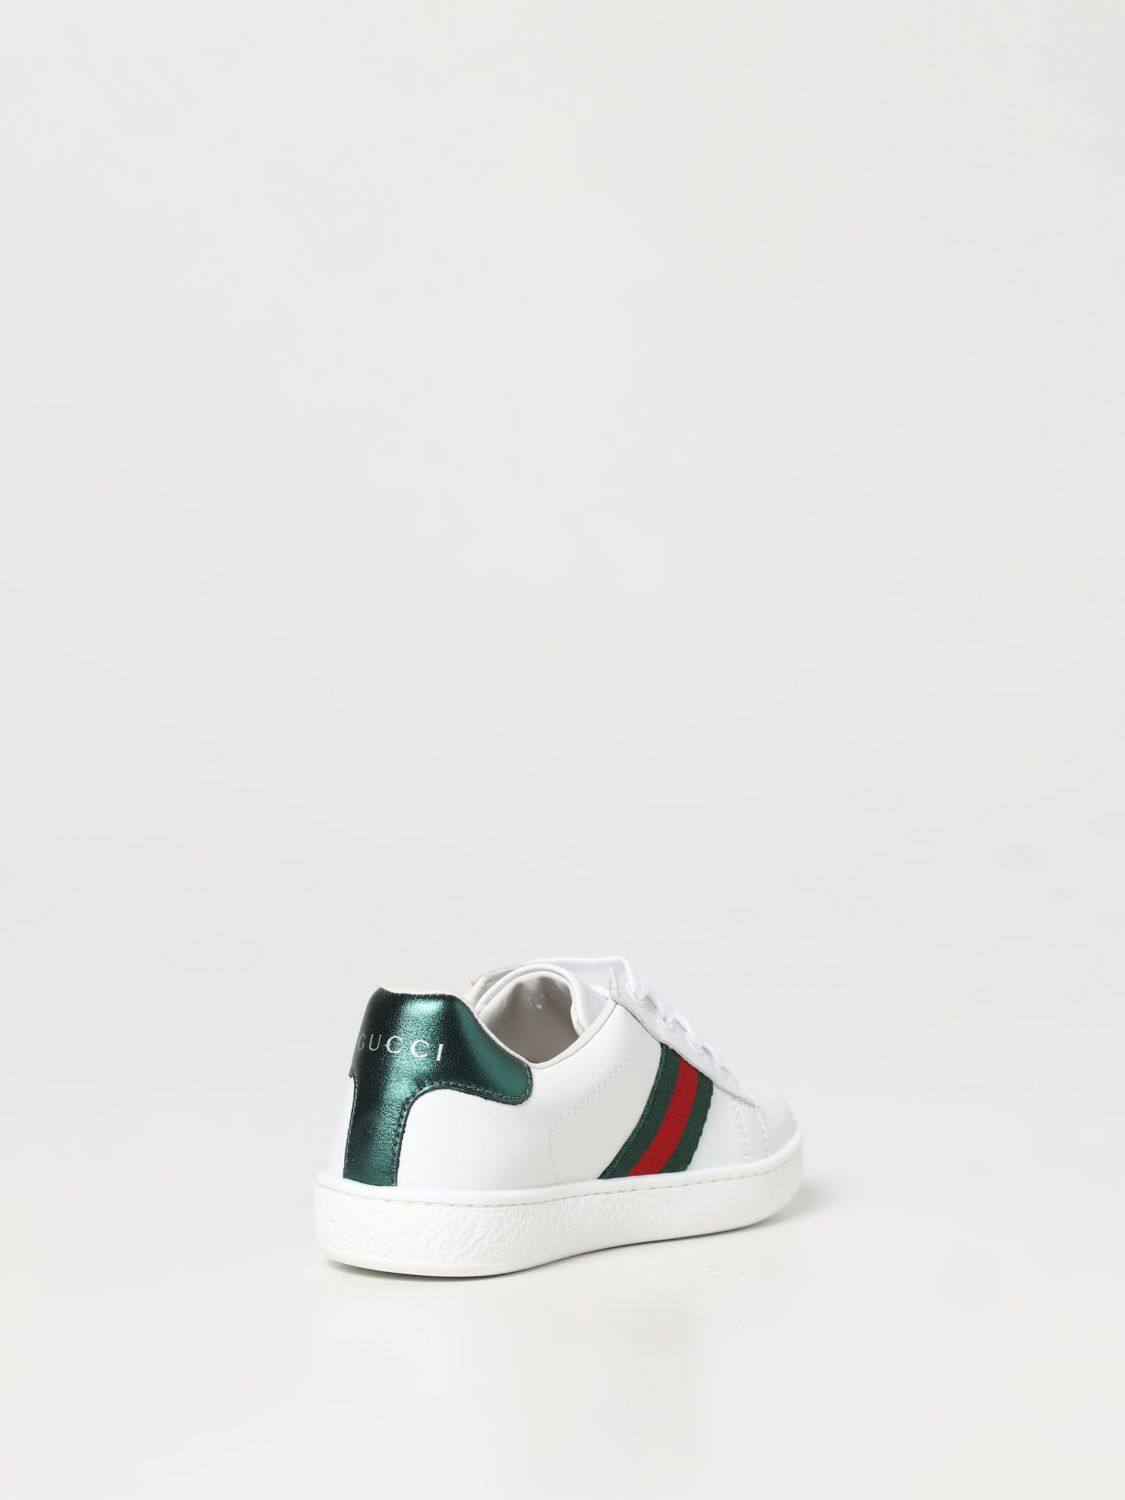 GUCCI: Zapatos para niño, Blanco | Gucci 433146CPWE0 en línea en GIGLIO.COM